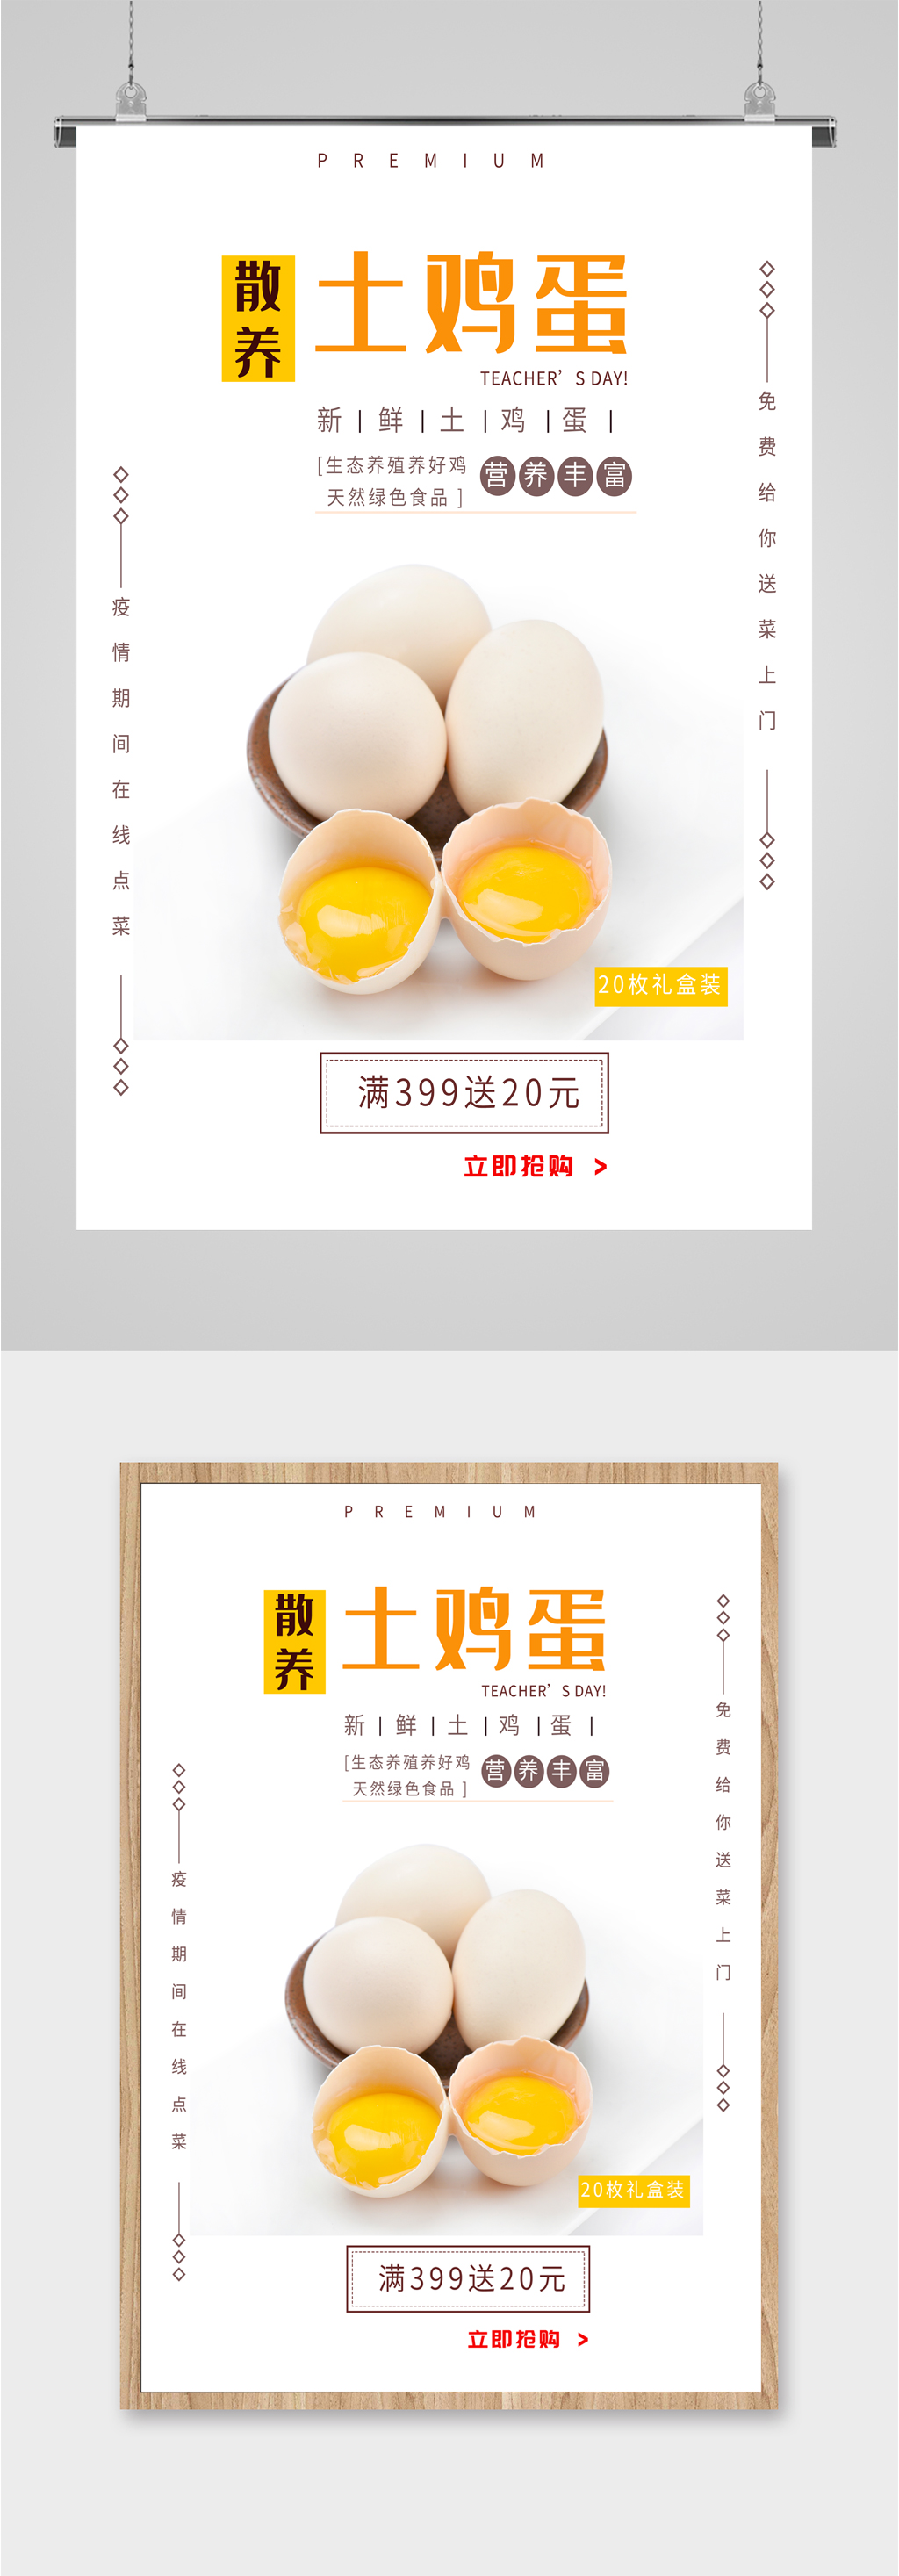 土鸡蛋土特产宣传海报